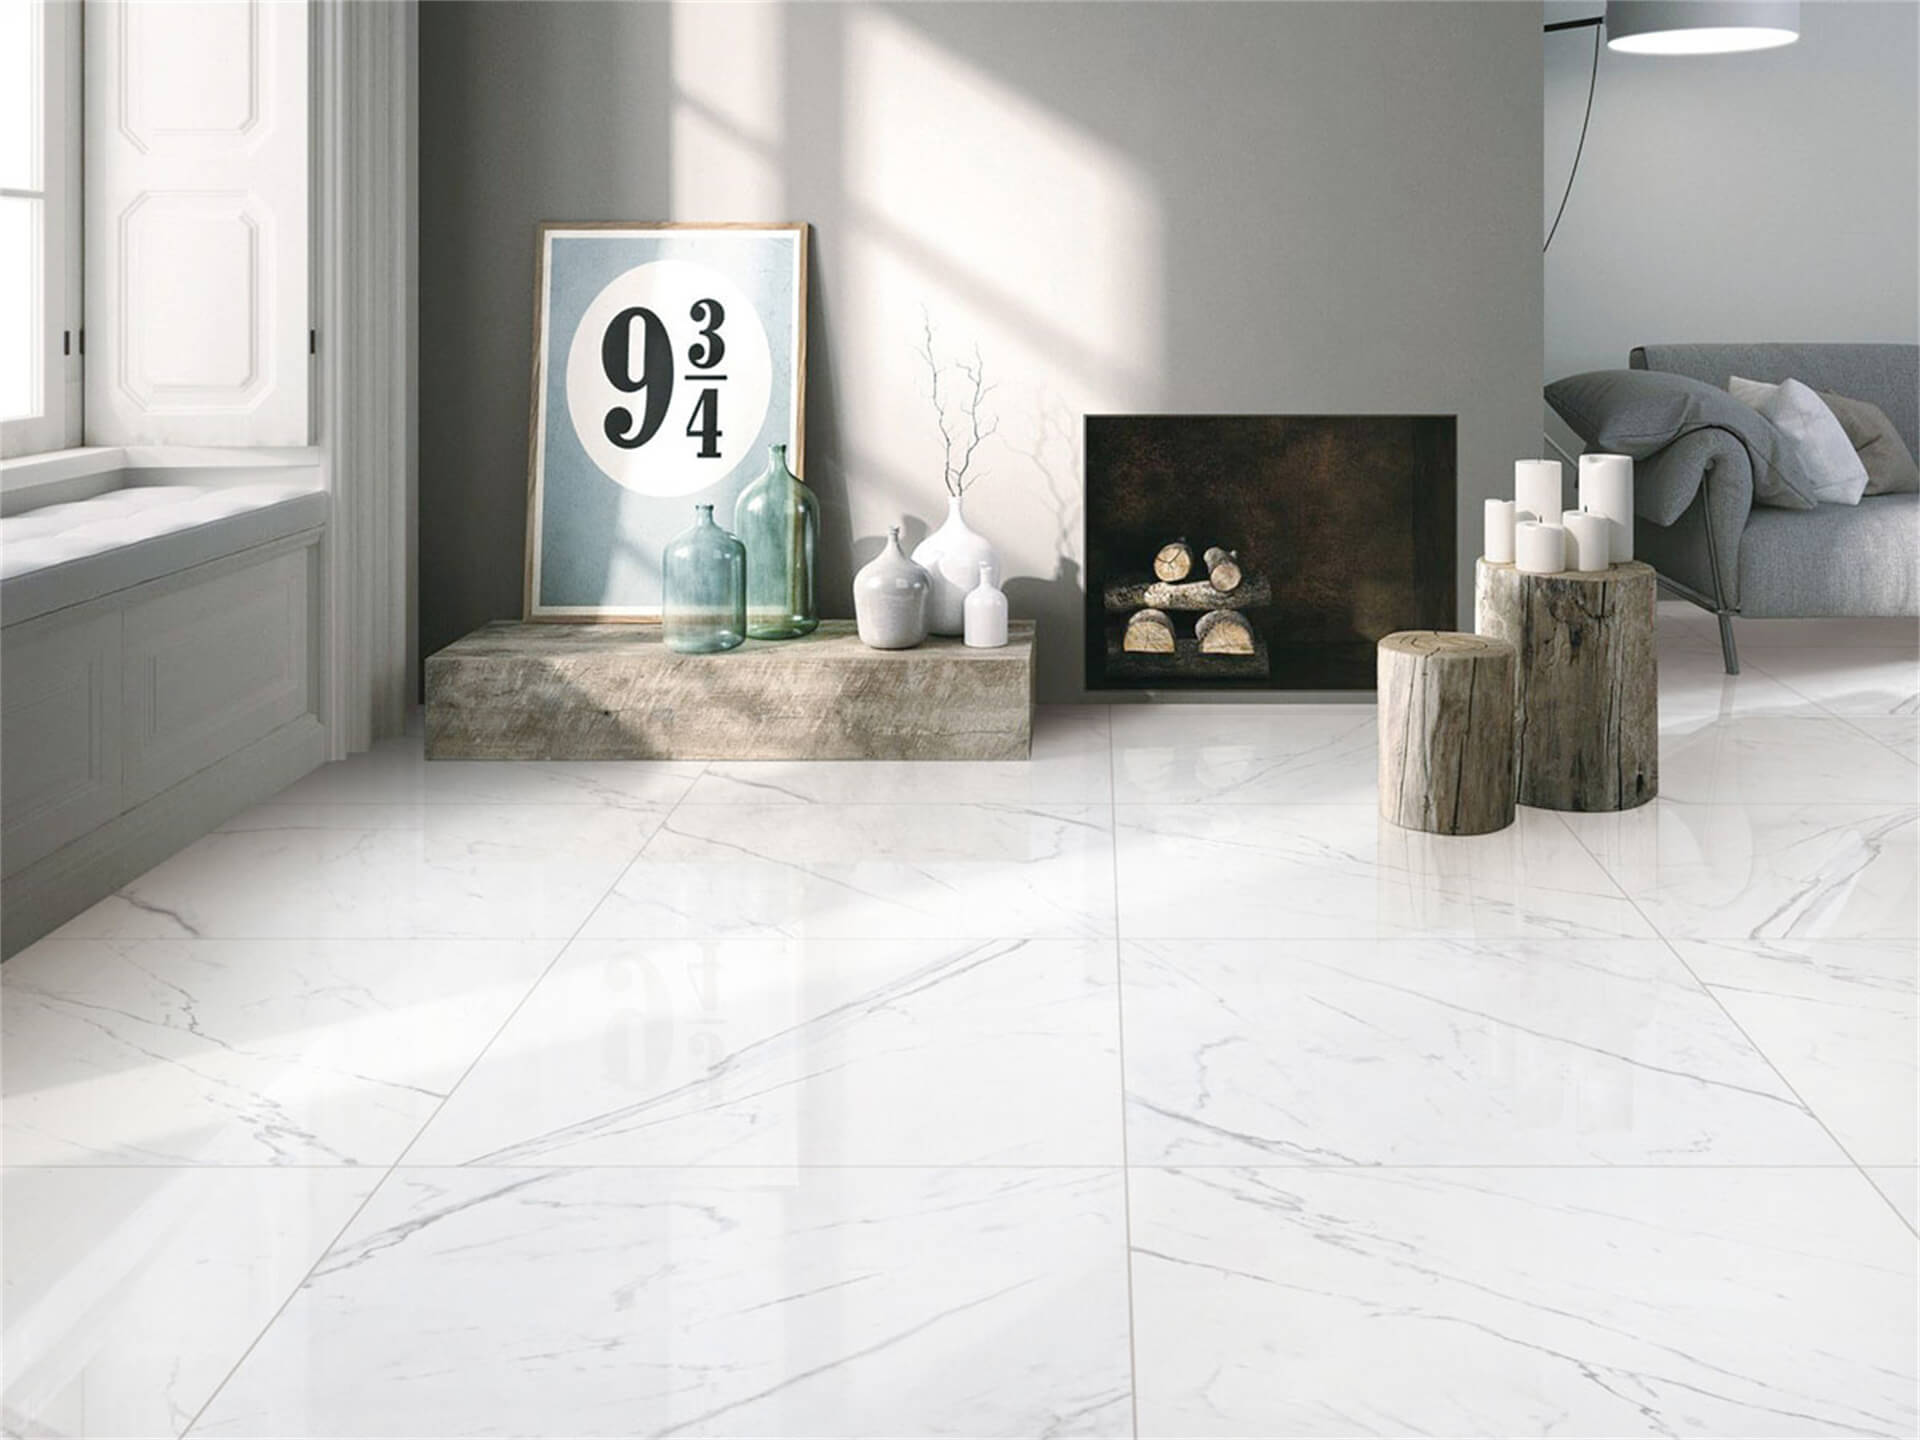 piso de mármore em espaço minimalista